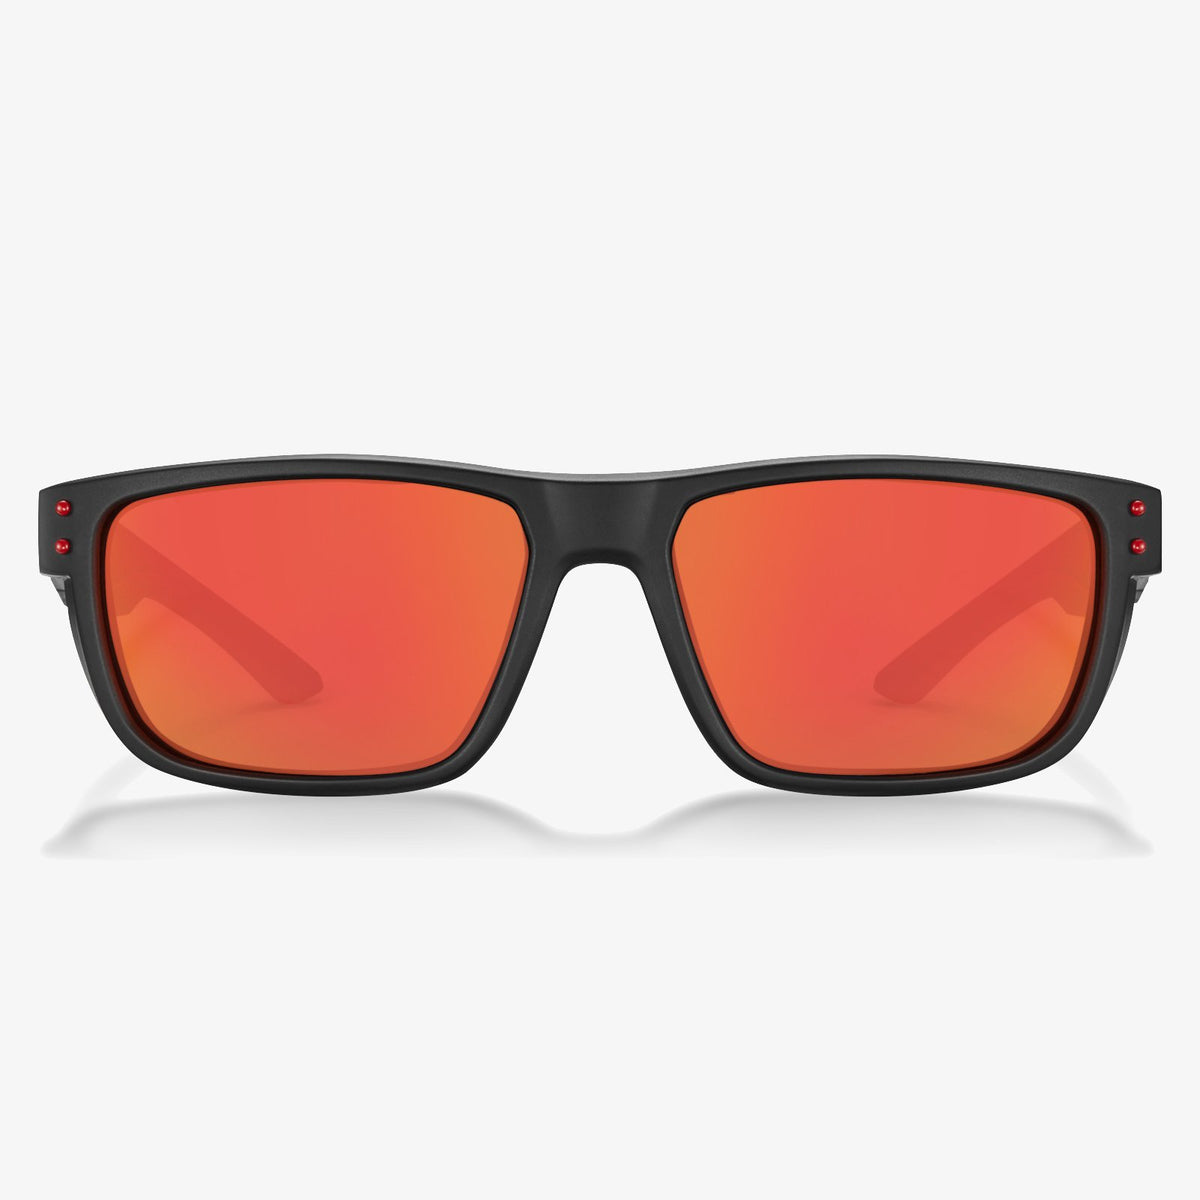 Rectangle Sunglasses  For Men | KOALAEYE